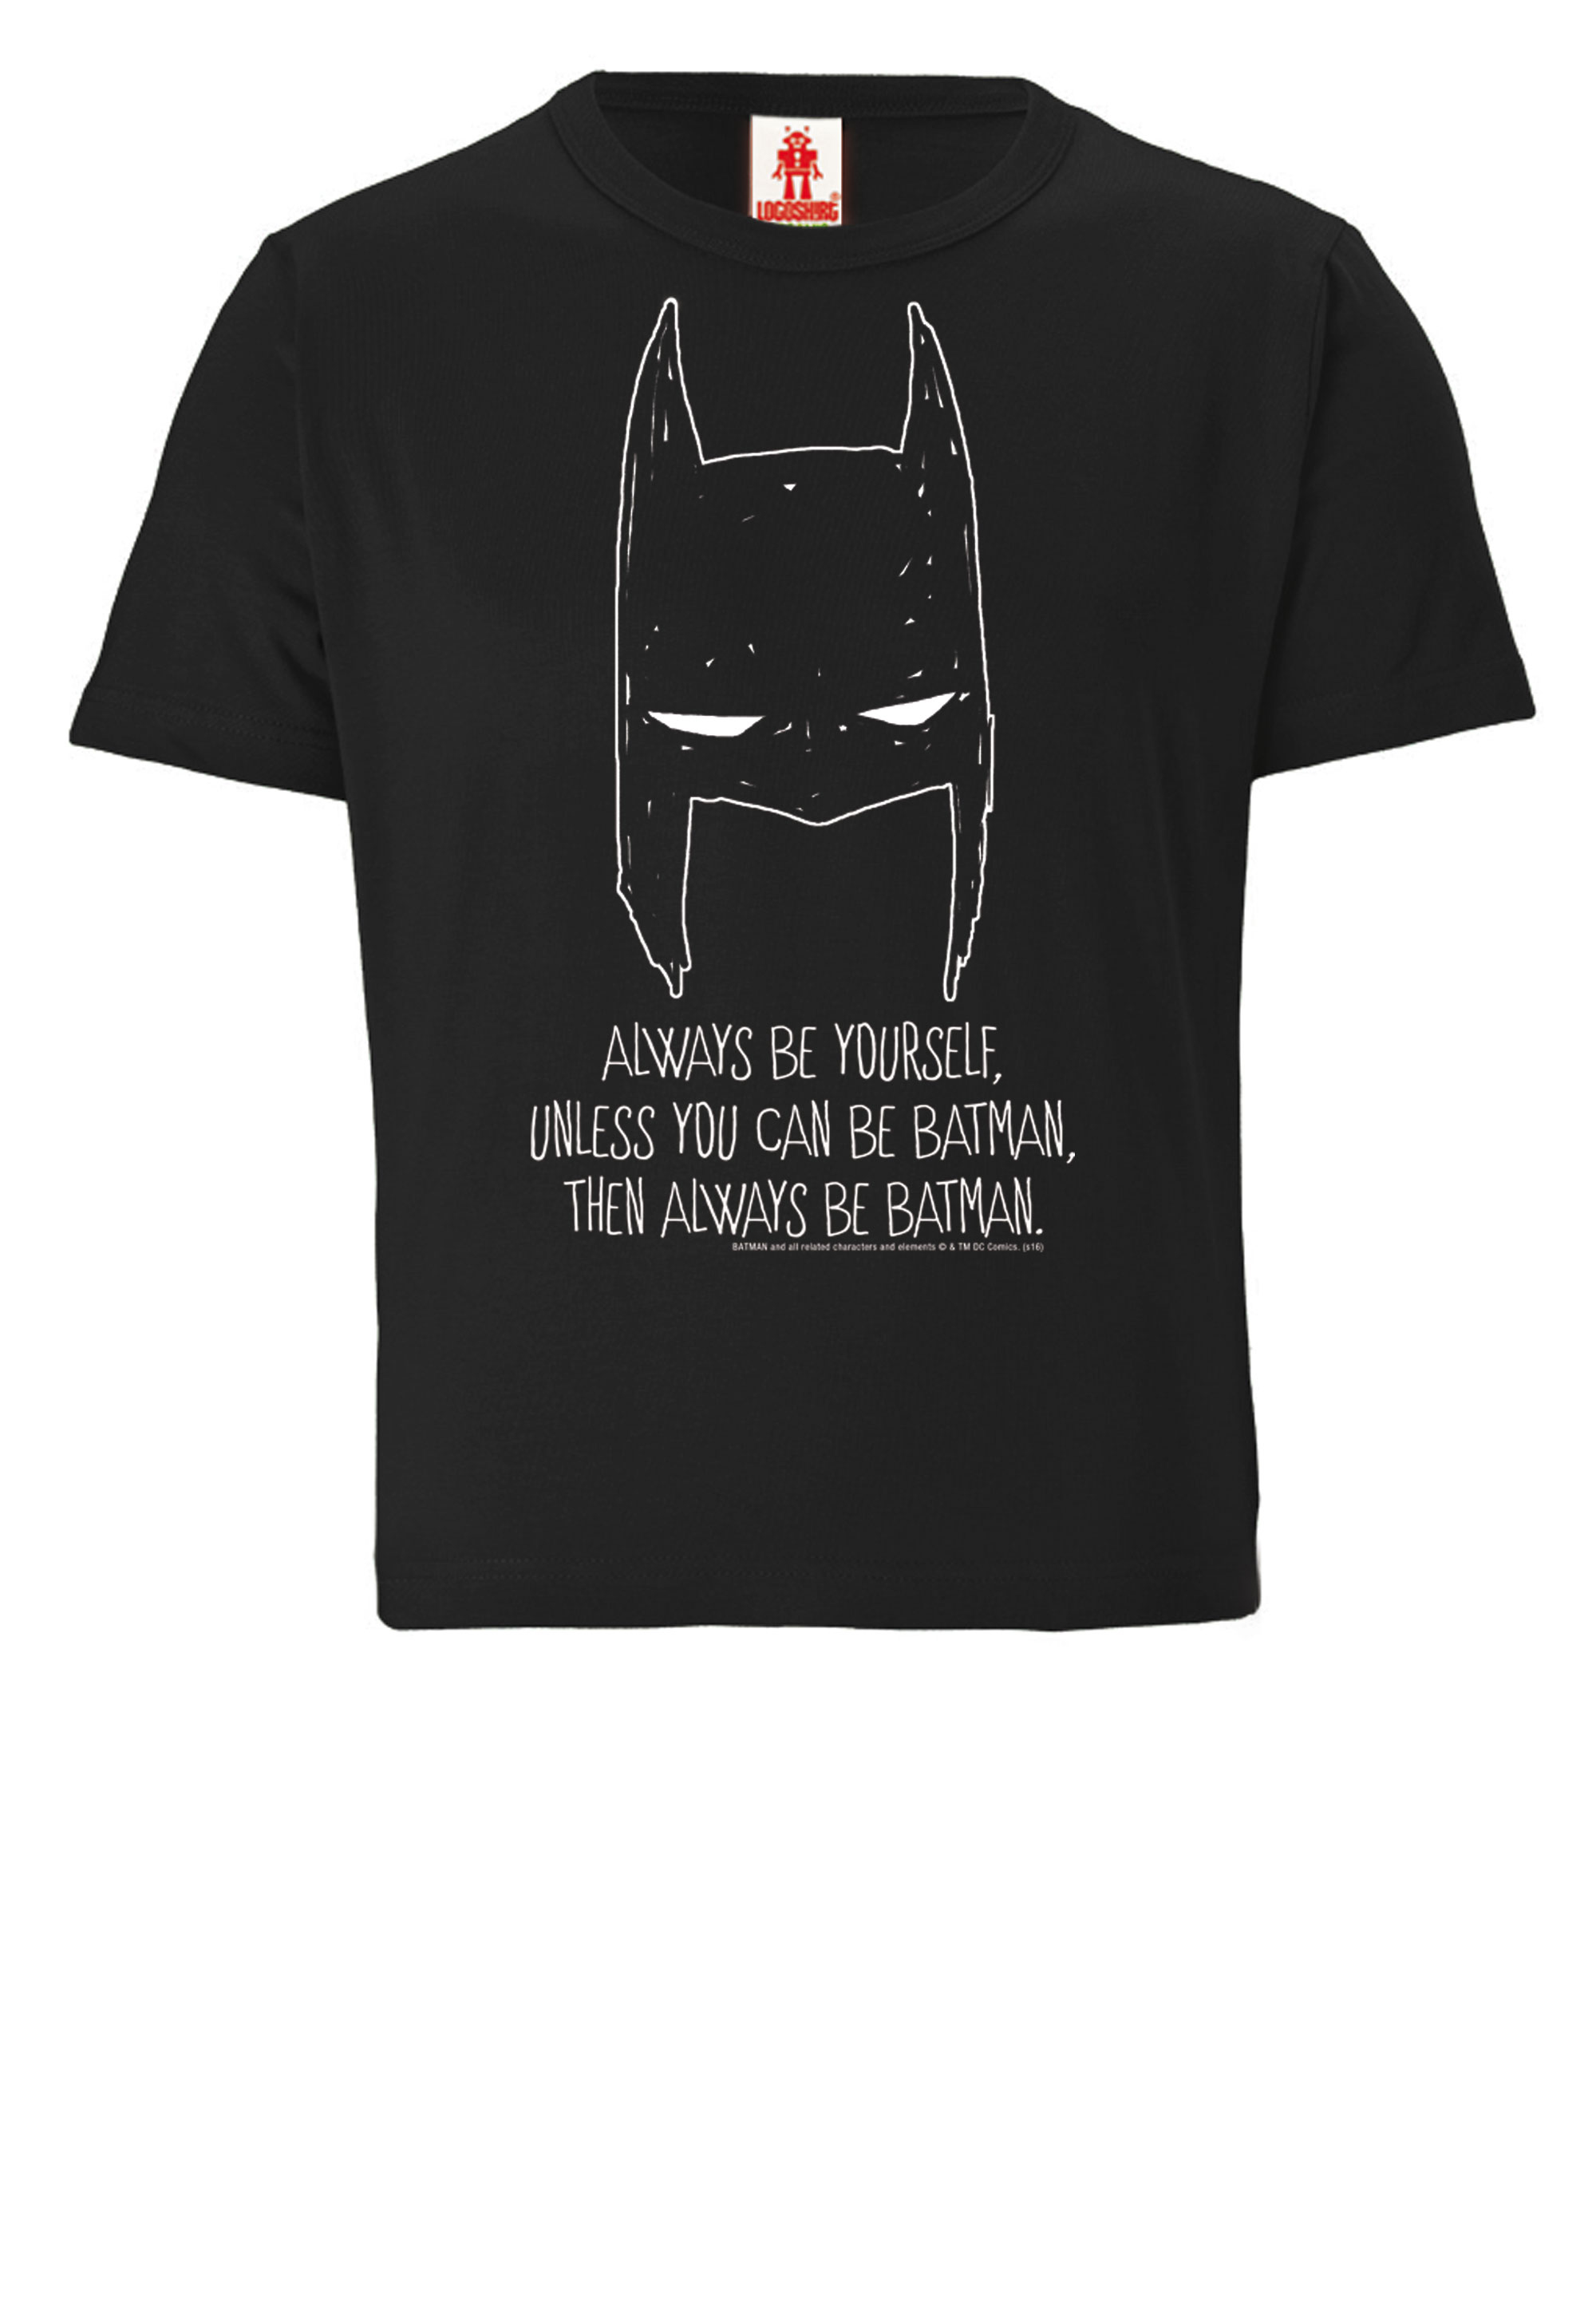 Футболка Logoshirt DC Comics Batman, Always Be Yourself, черный